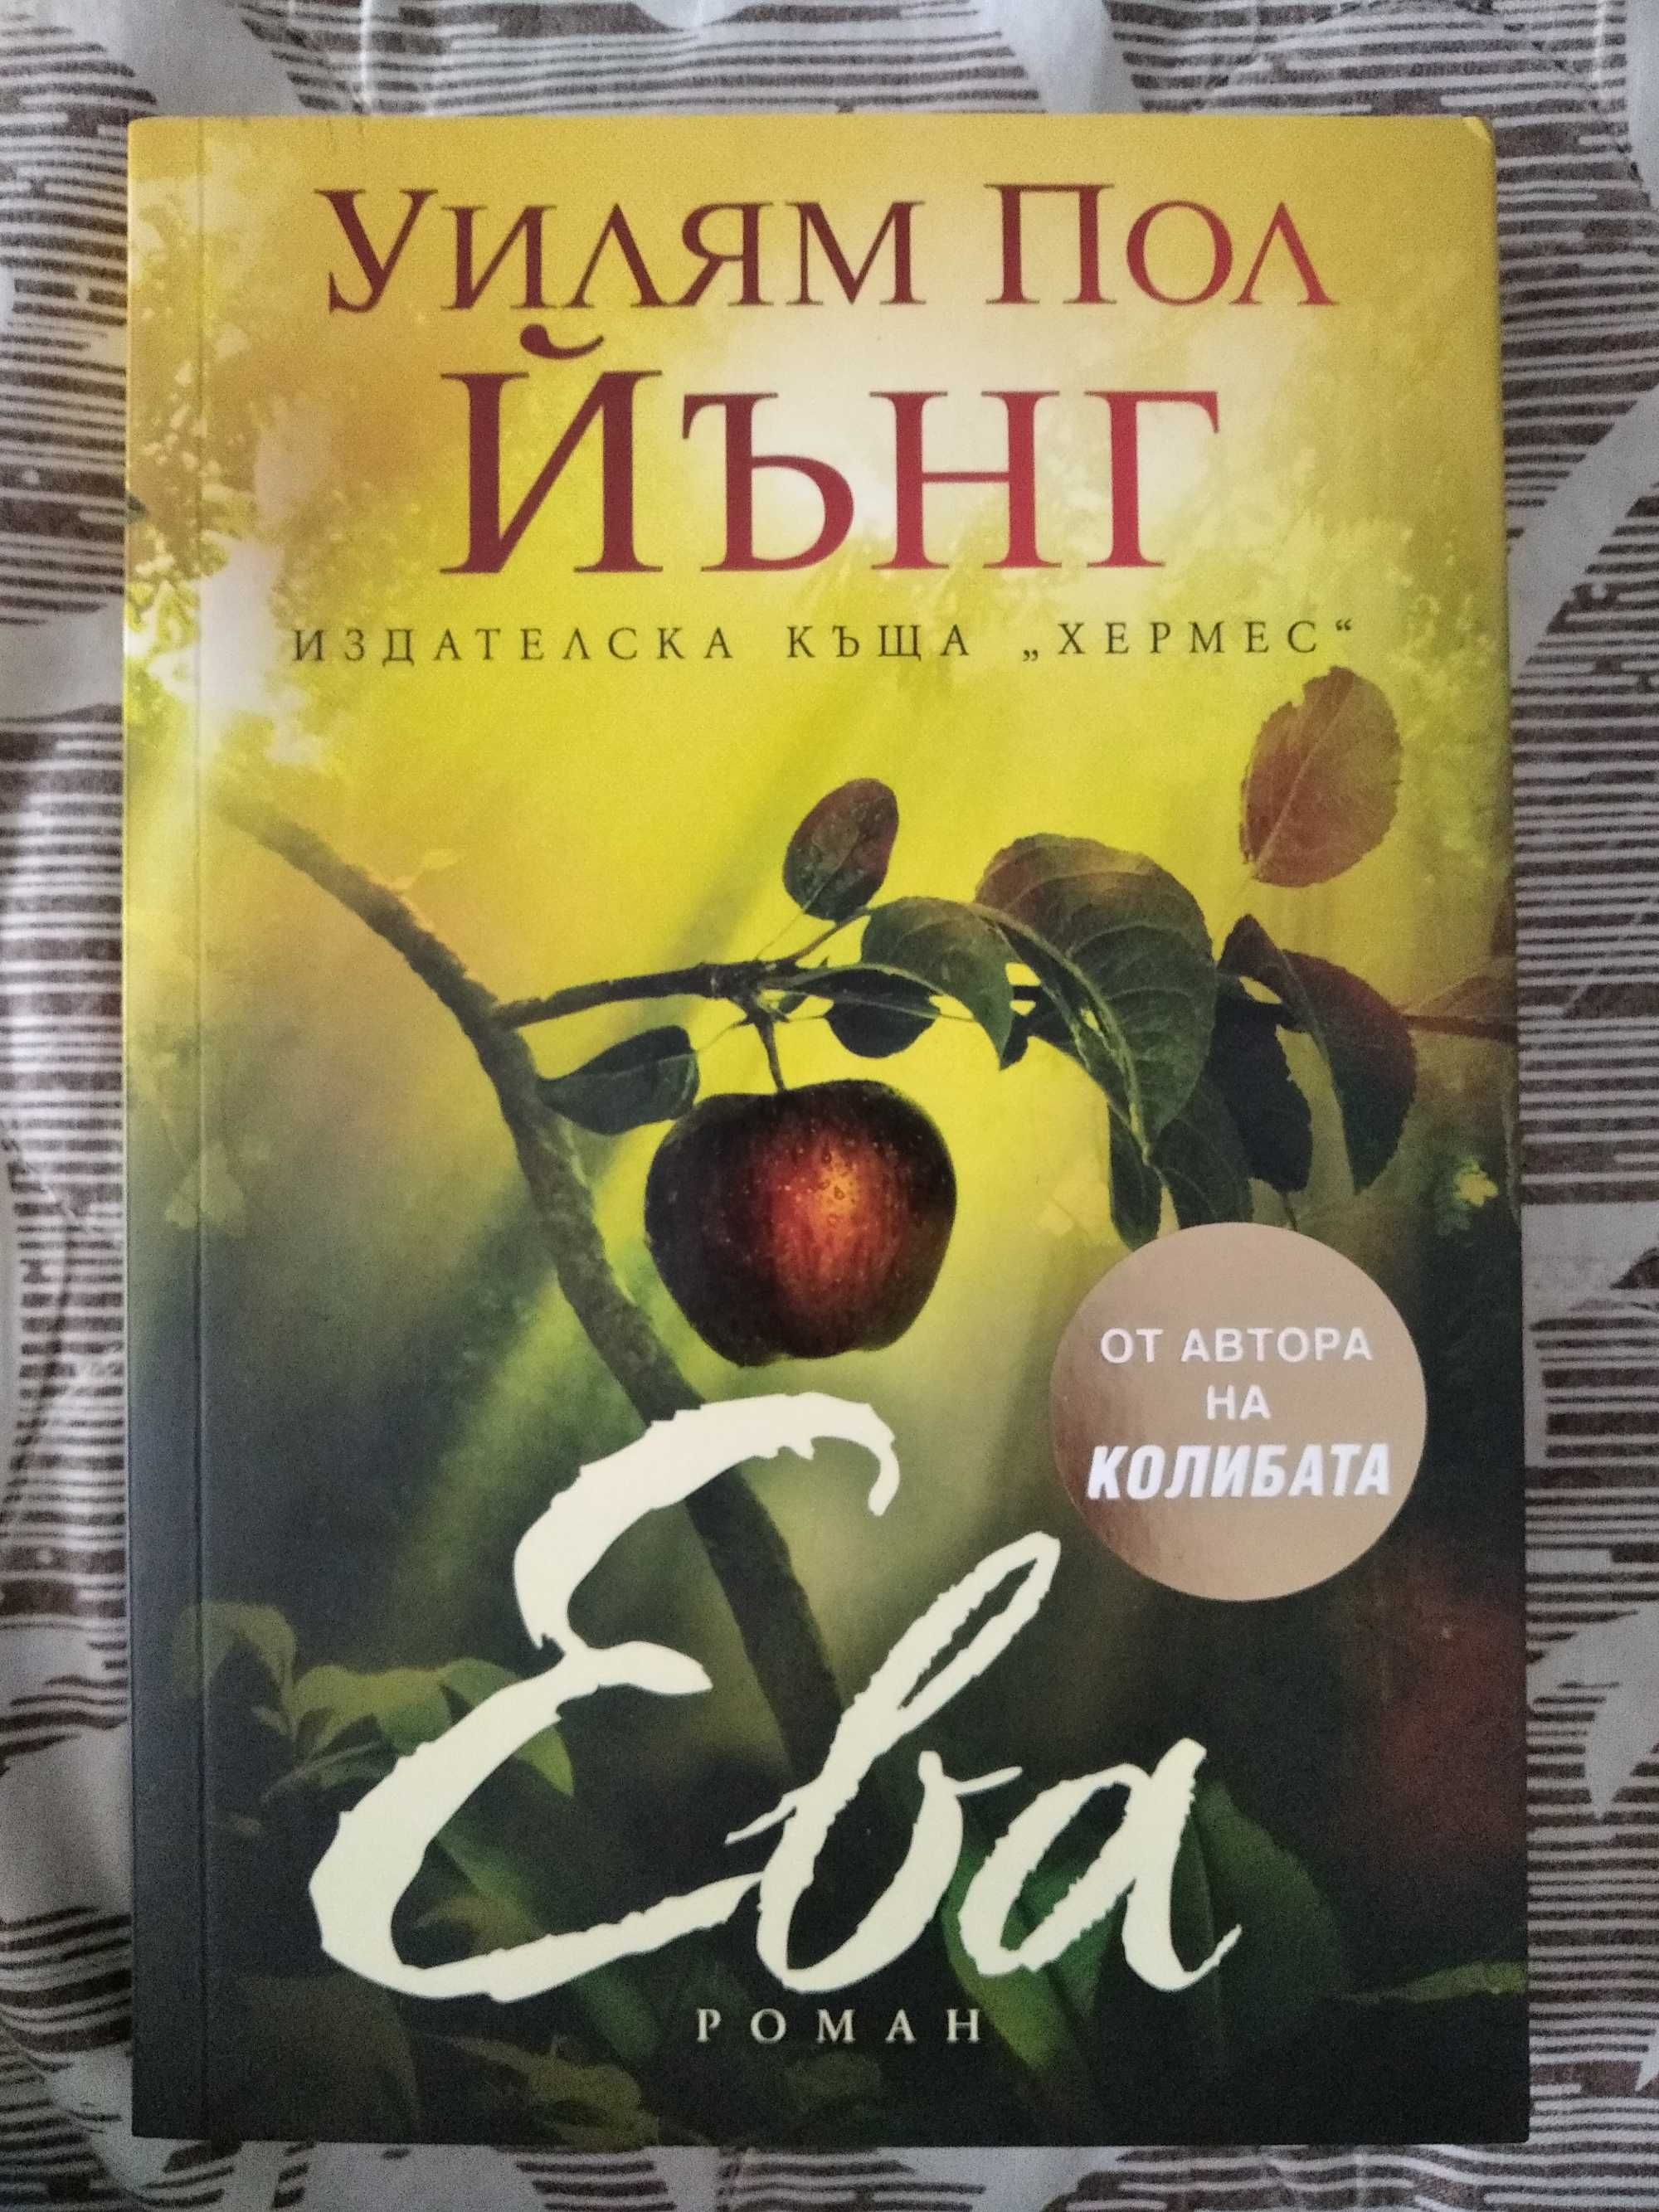 Книга фантастичен християнски роман на Уилям Пол Йънг - "Ева"